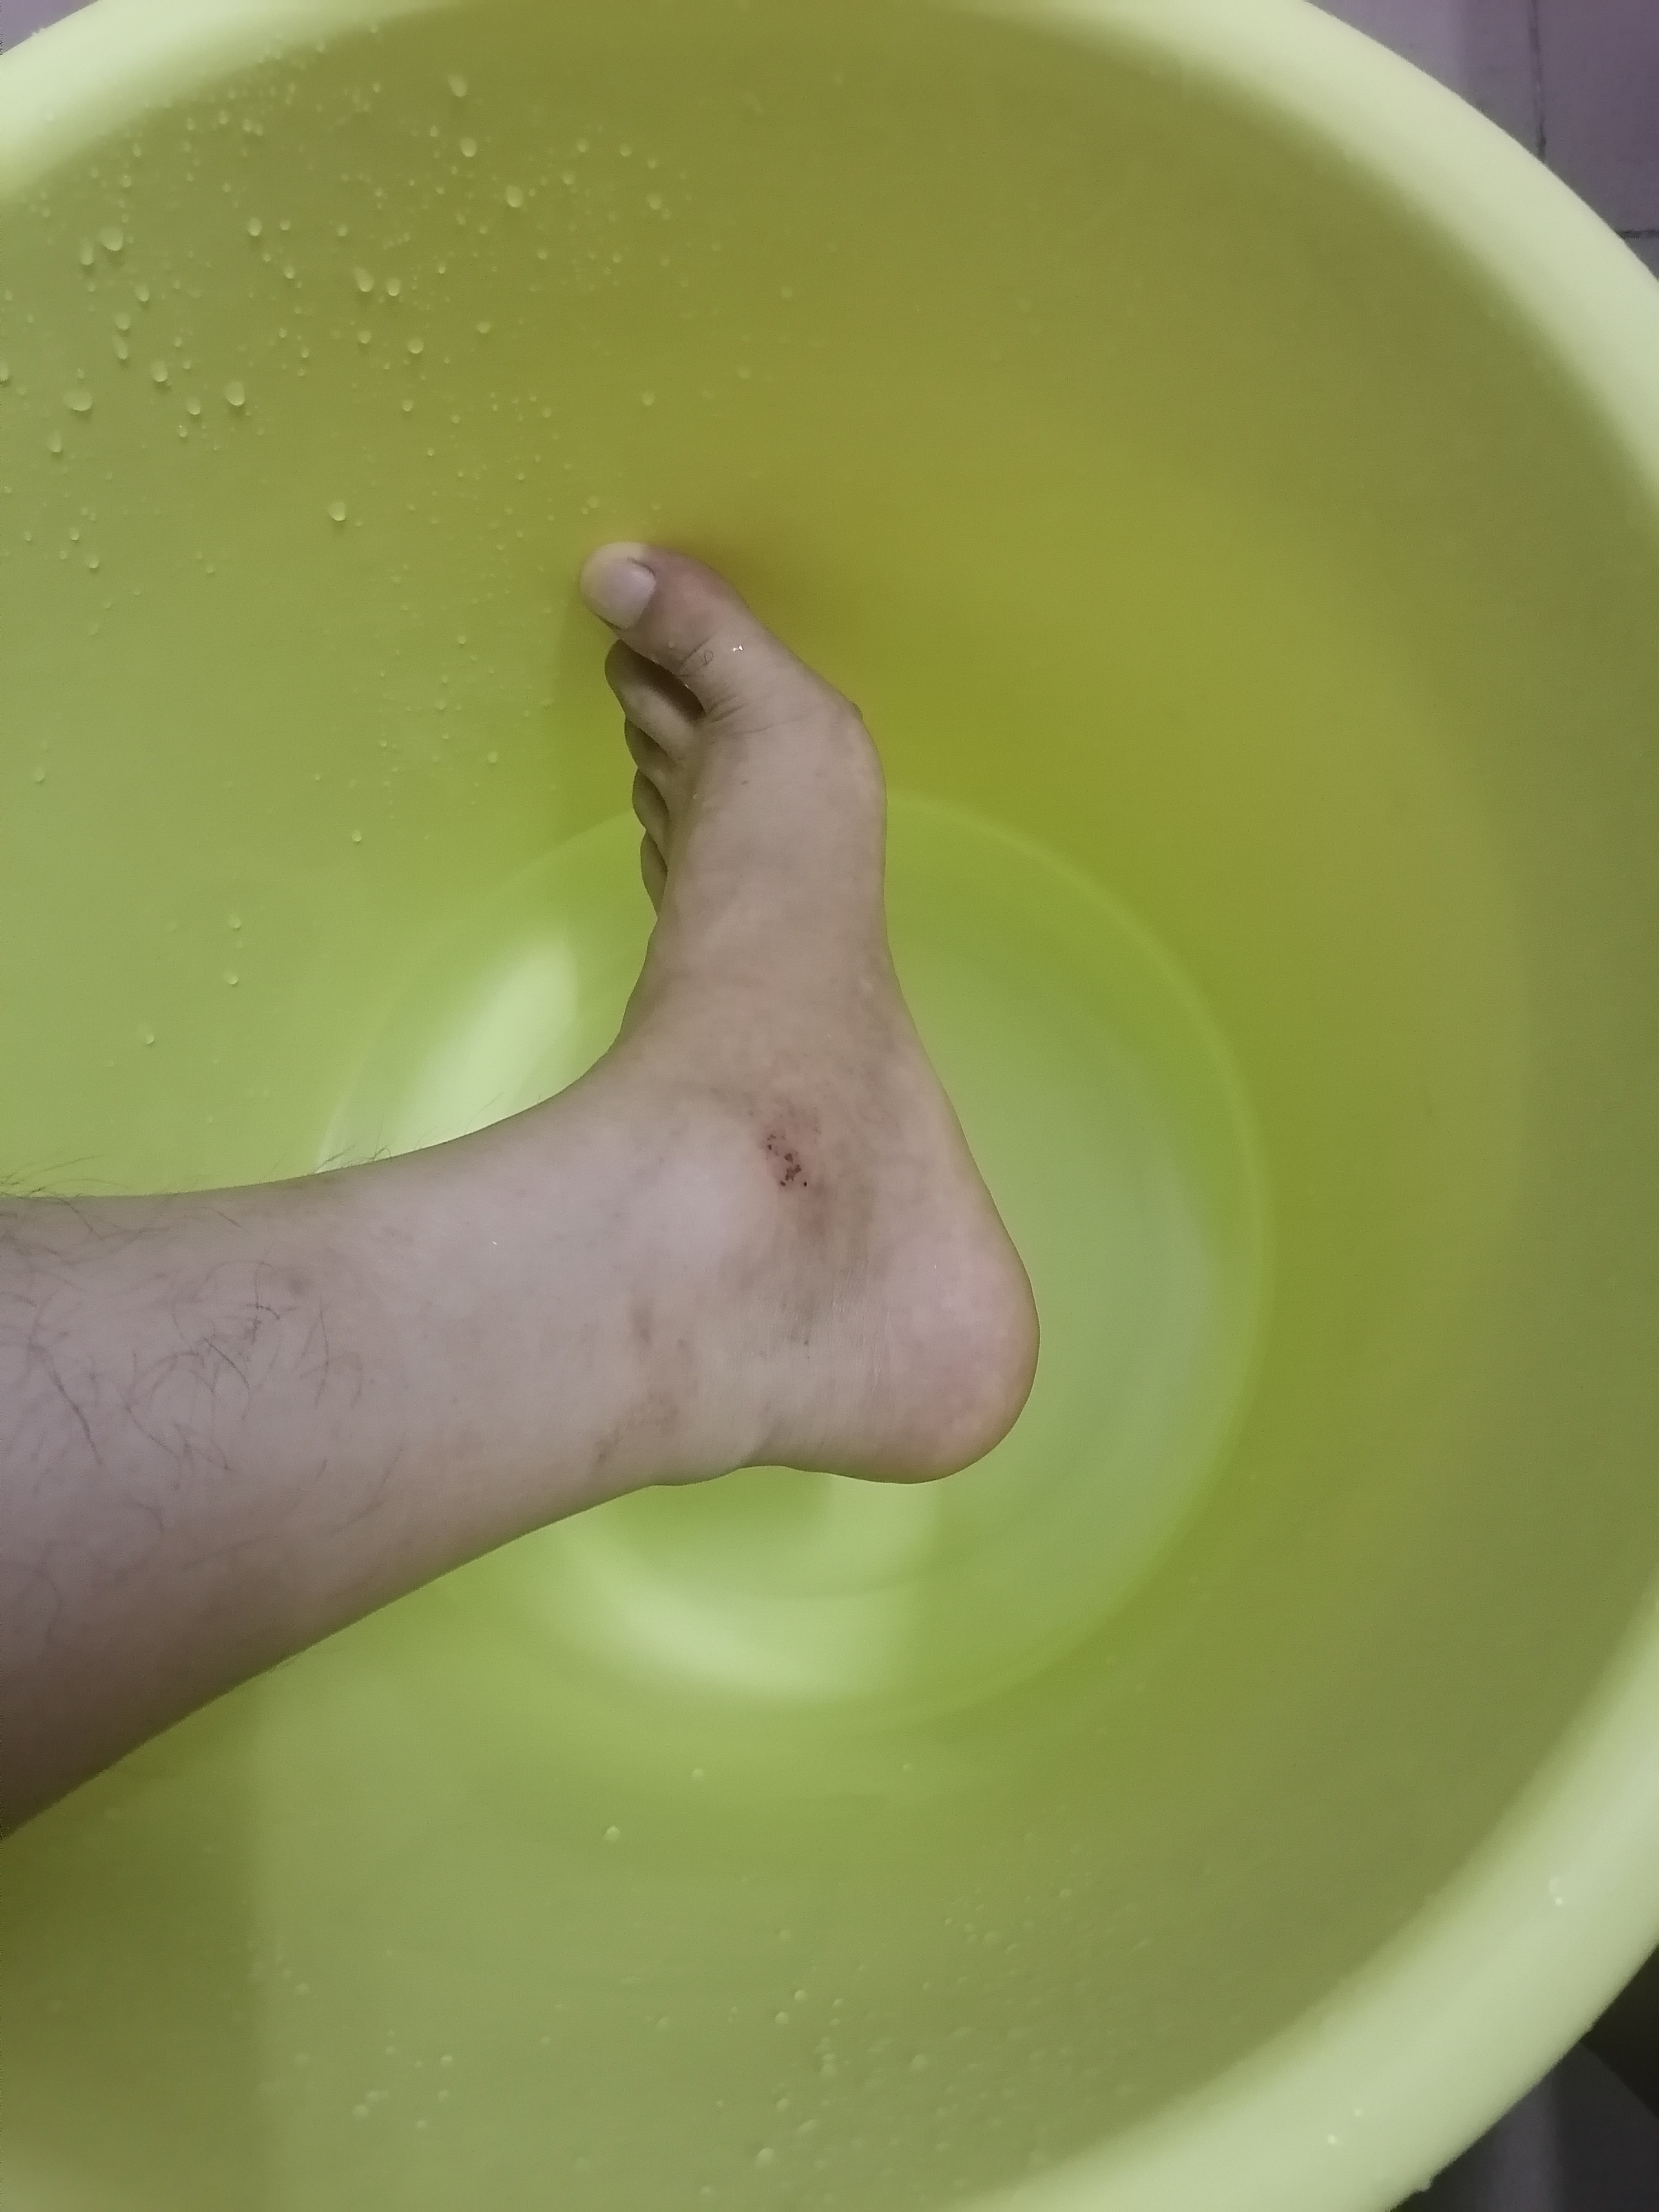 热水泡泡脚,据说可以去除扭伤的遗症,就试试不知结果咋样?